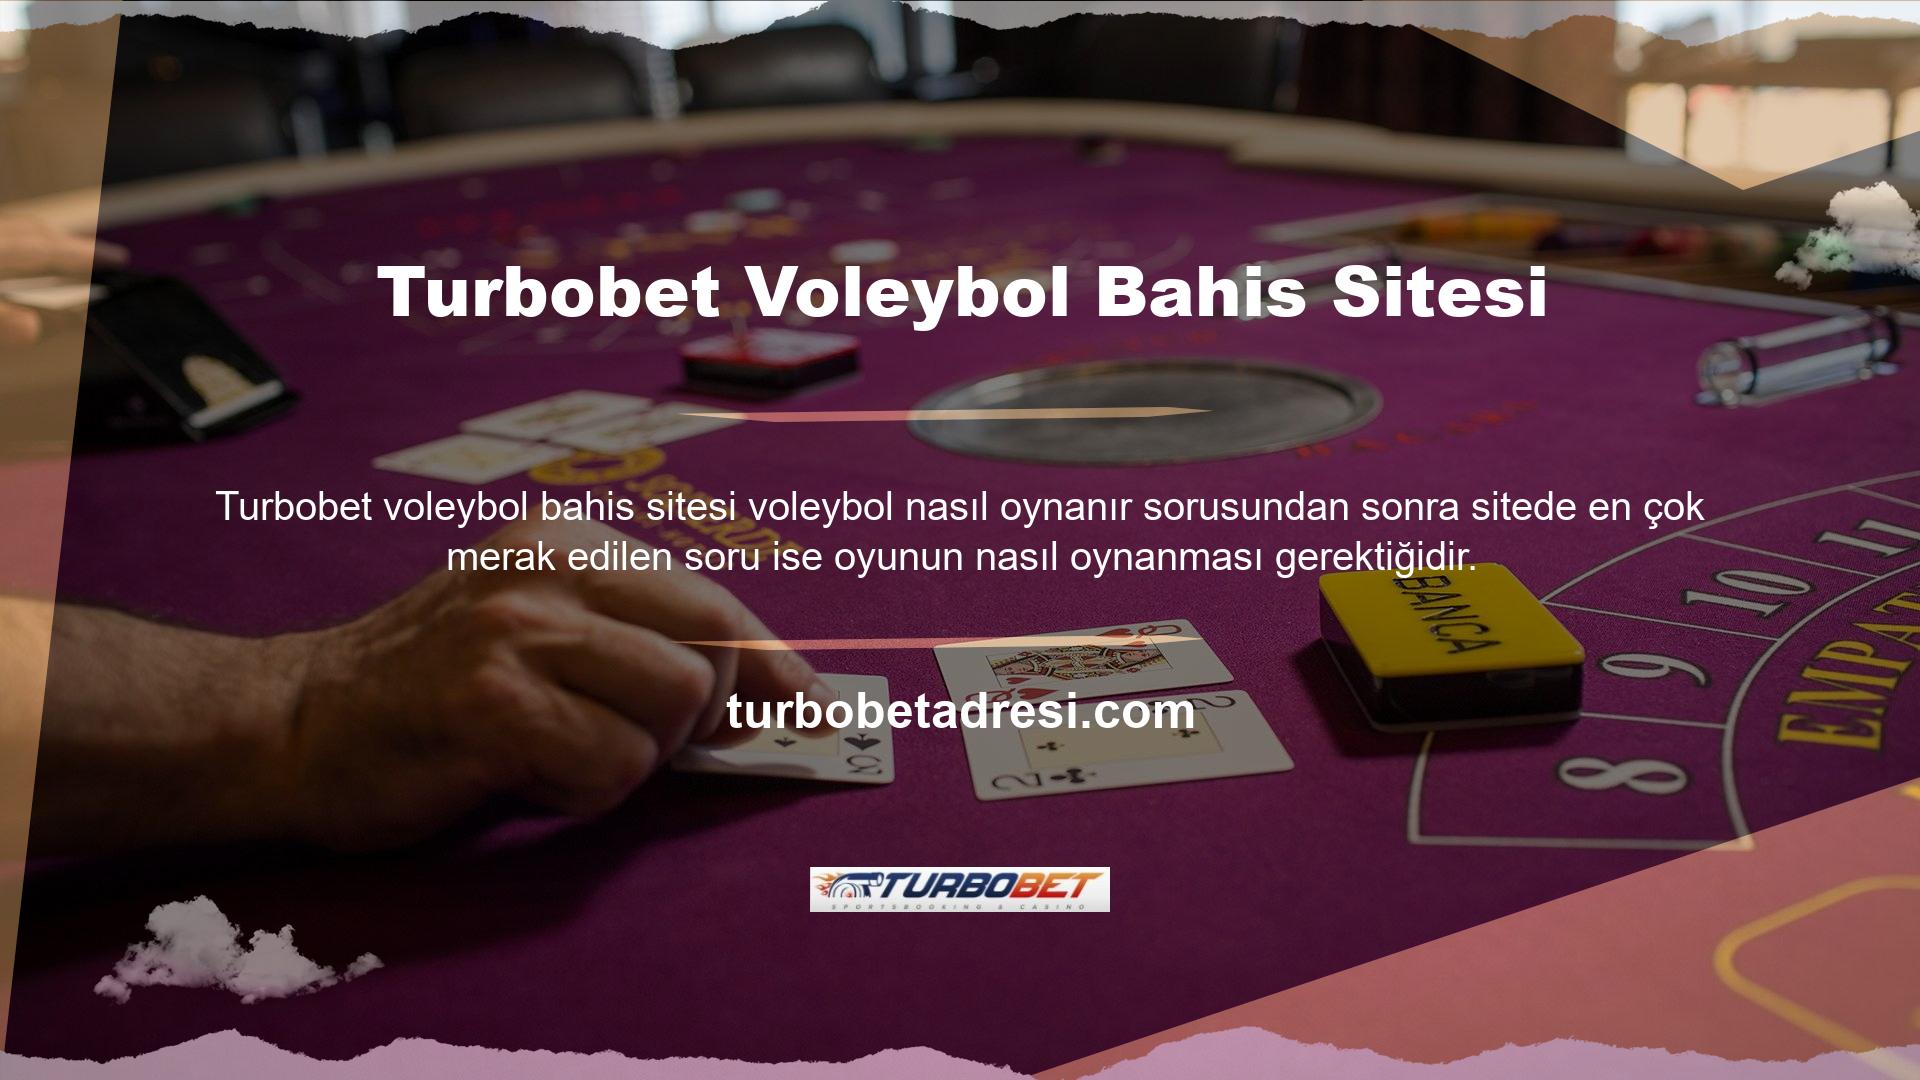 Bunun için Turbobet, Türk ve yabancı arkadaşlık siteleri sunmaktadır